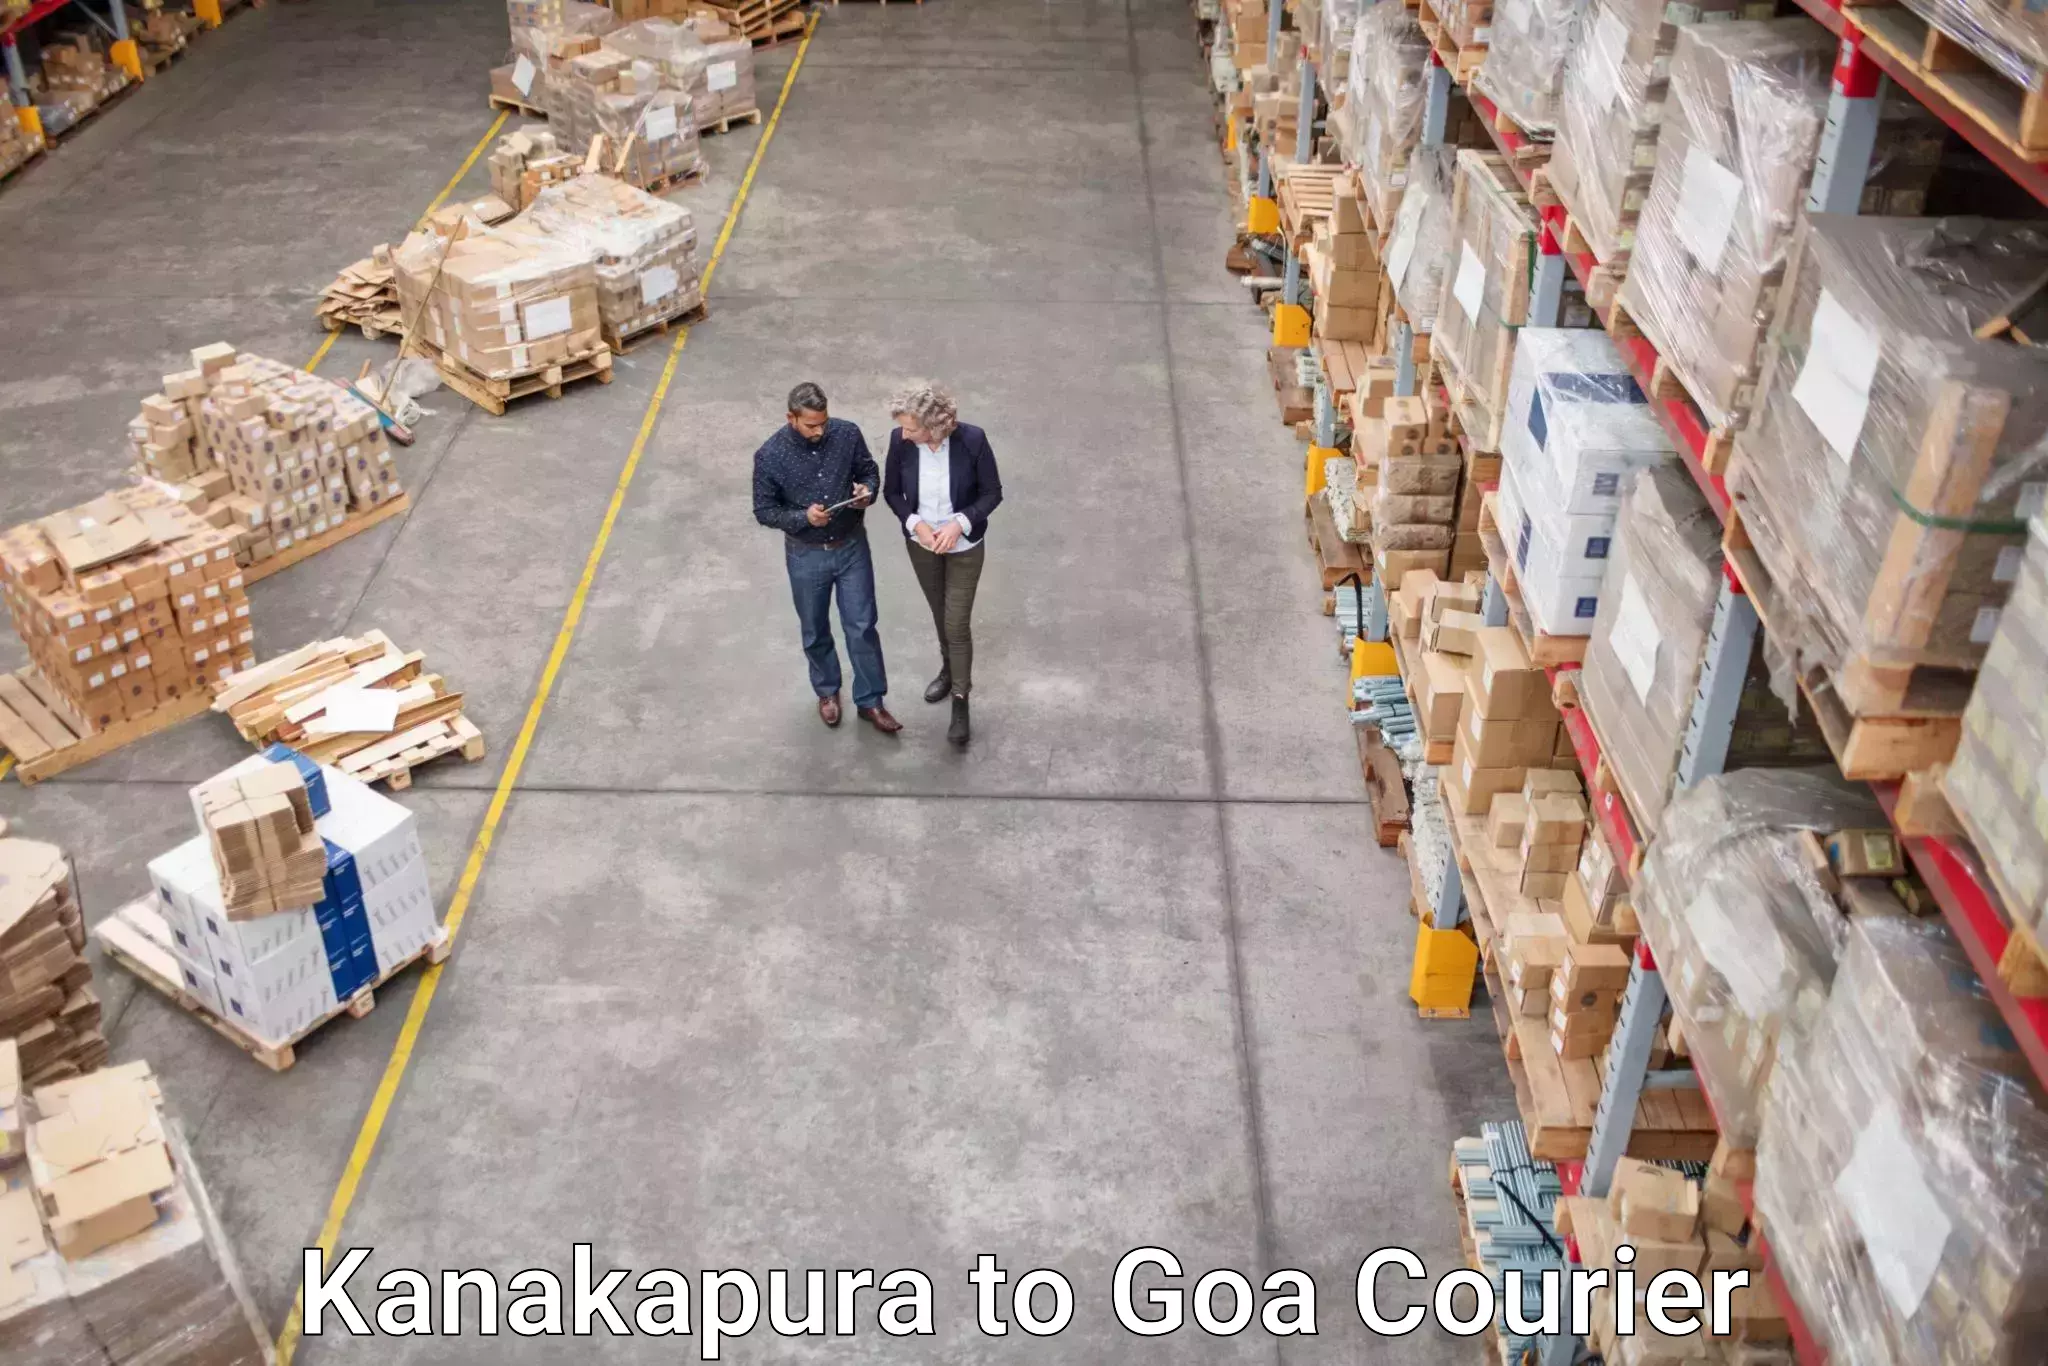 Courier service innovation Kanakapura to Panjim